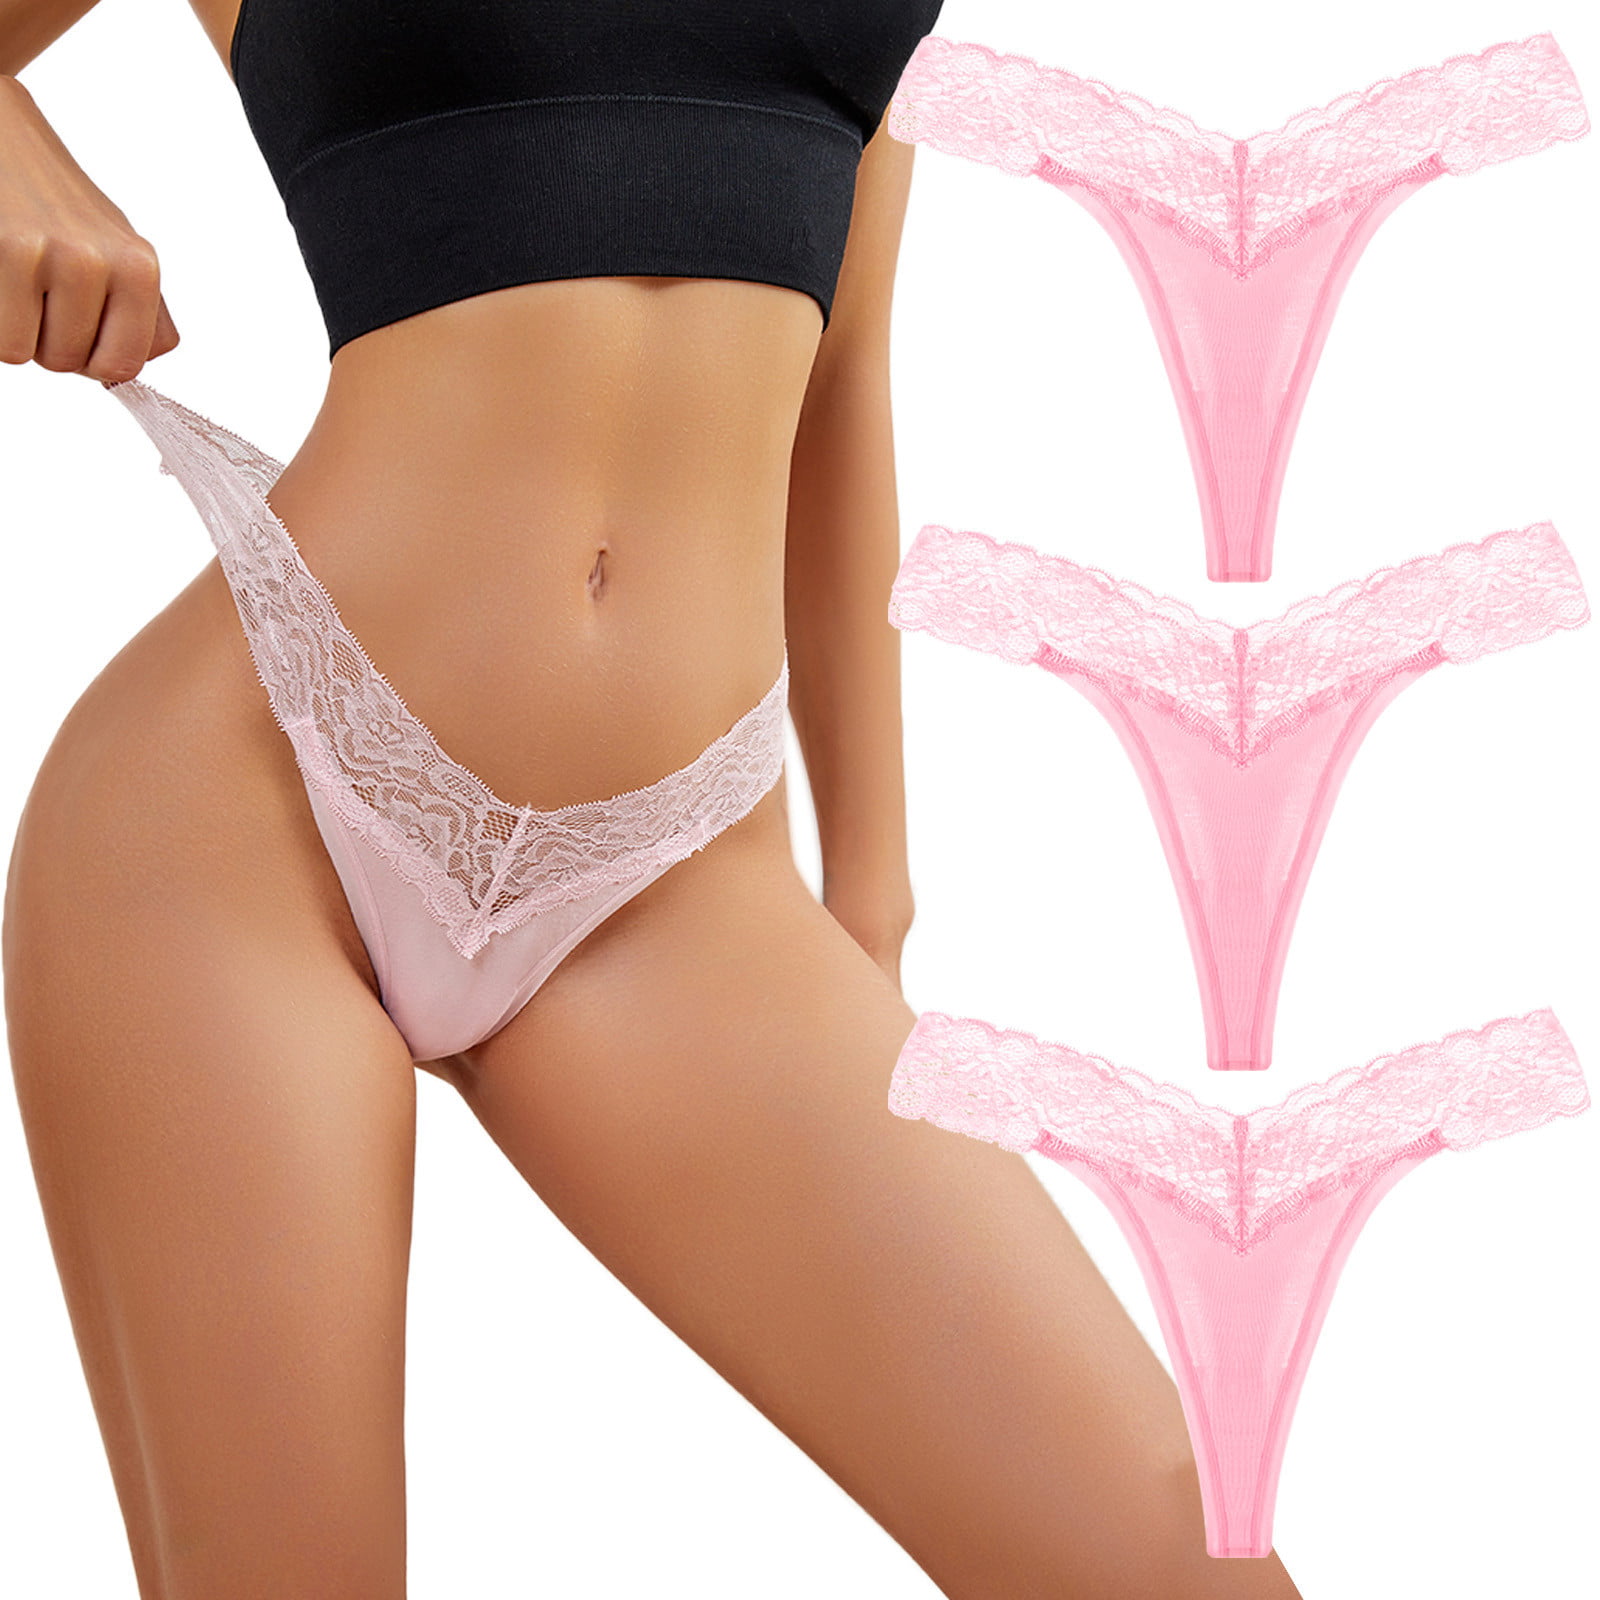 2DXuixsh Extra Large Panties For Women Women Lace Threaded Panties